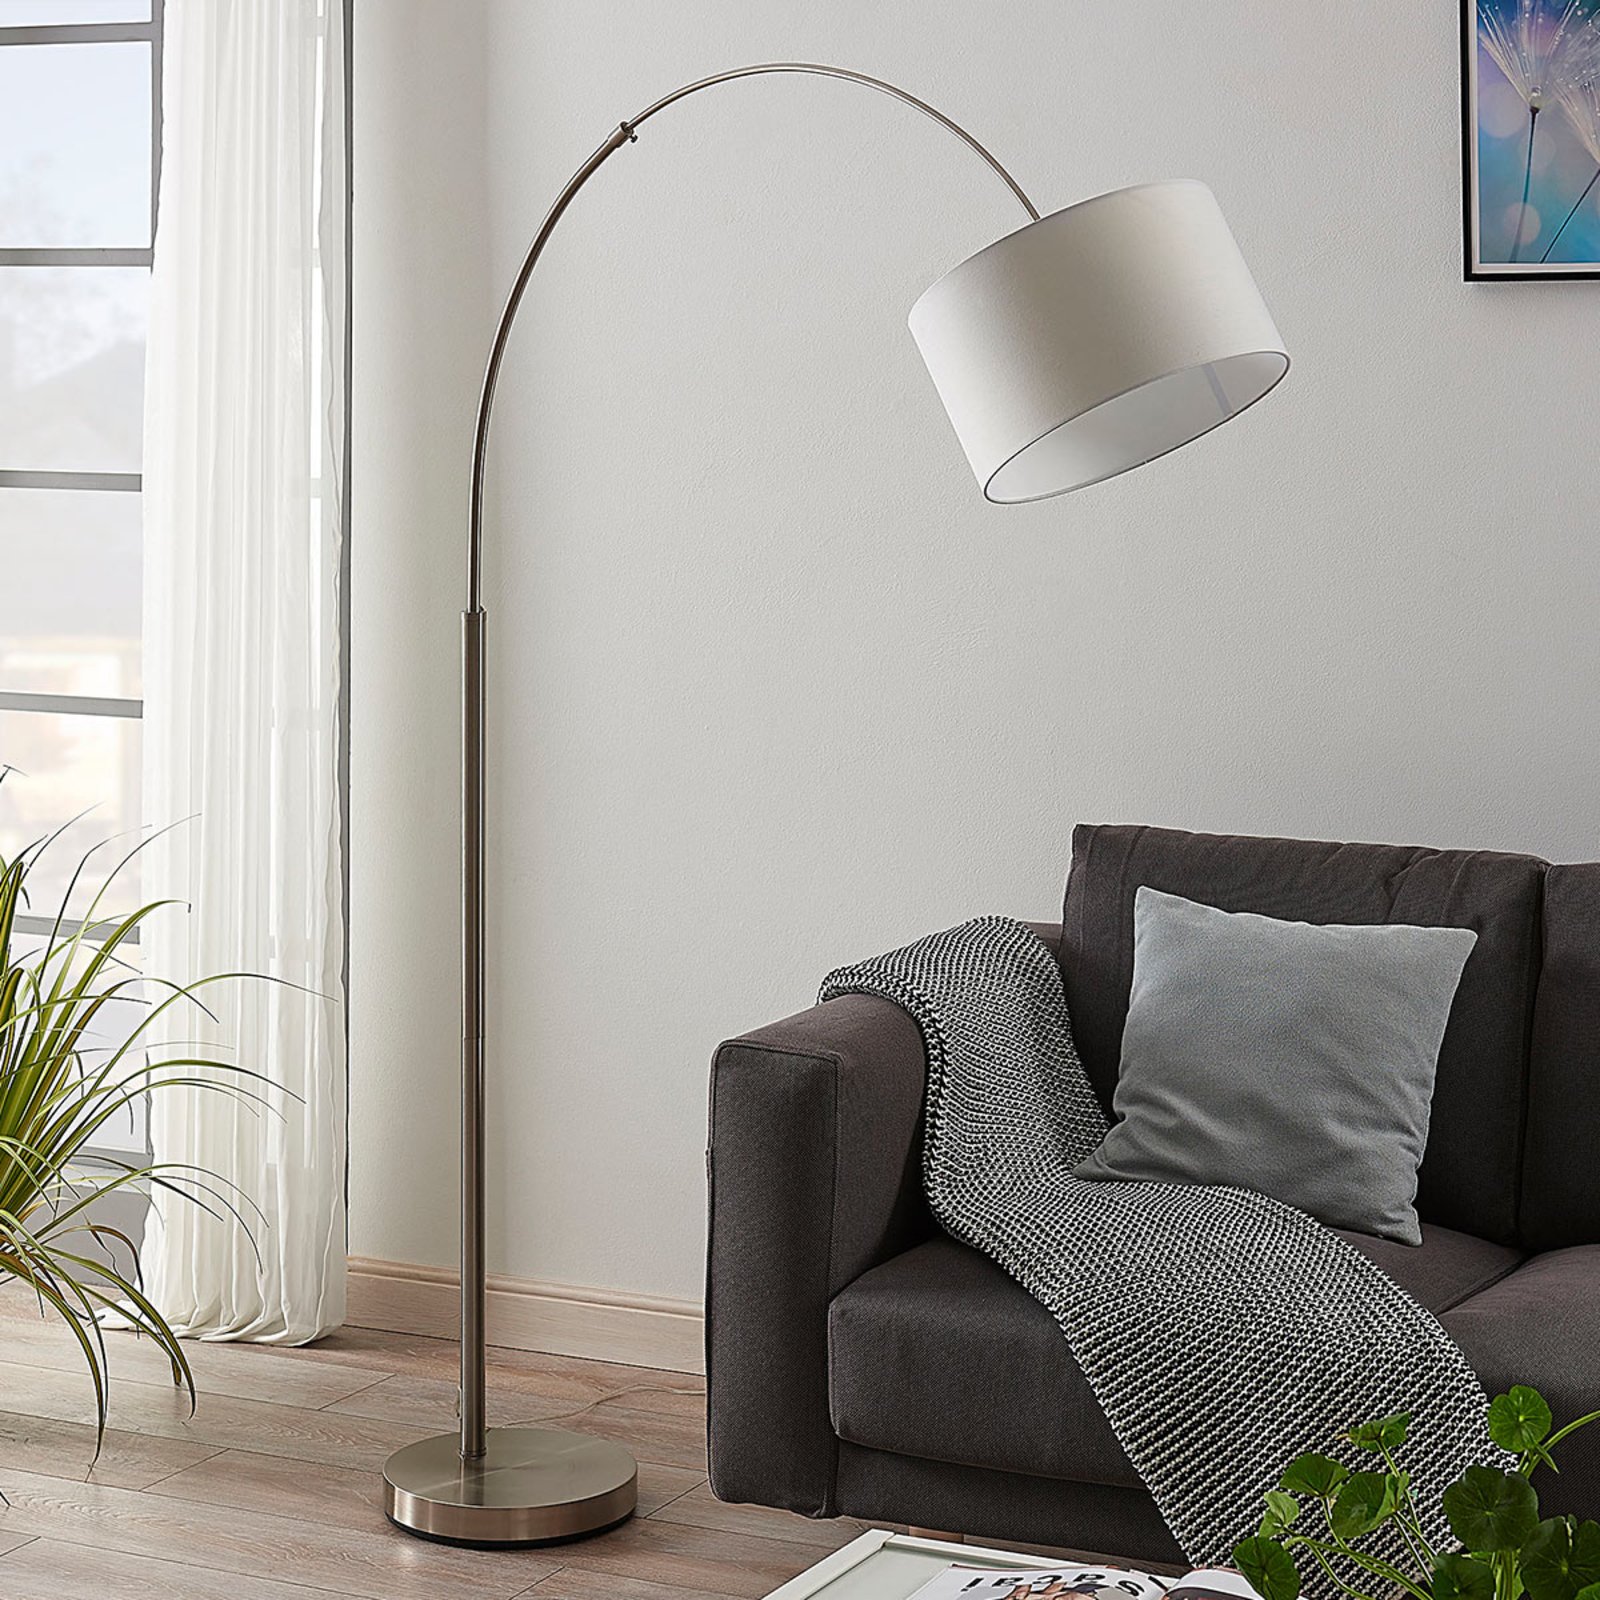 DEL Lampe debout stand projecteur lampe cristal salon chambre design éclairage 